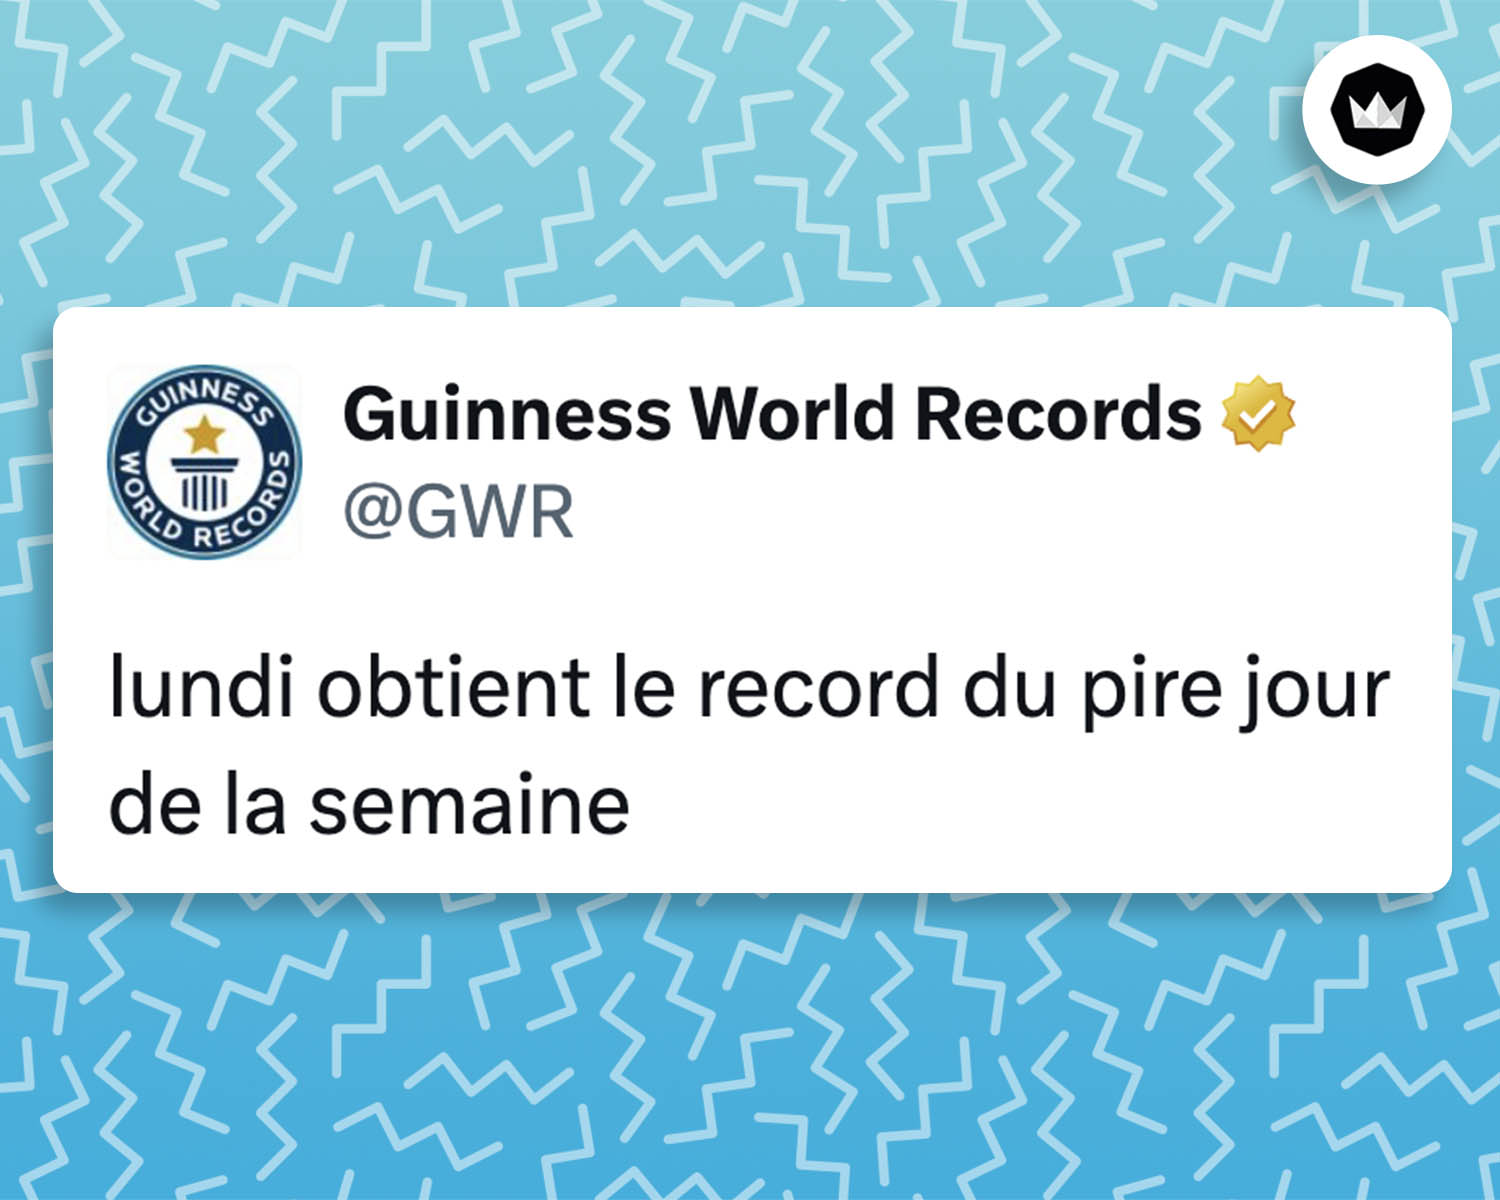 Guinness World Records : "lundi obtient le record du pire jour de la semaine.